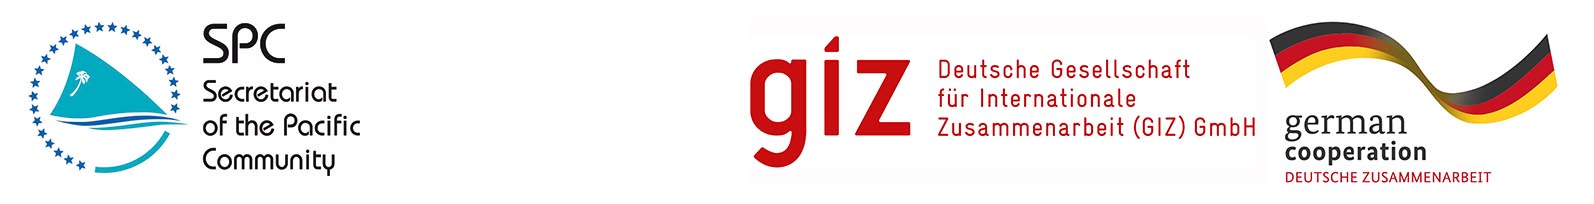 spc-giz-web_logo